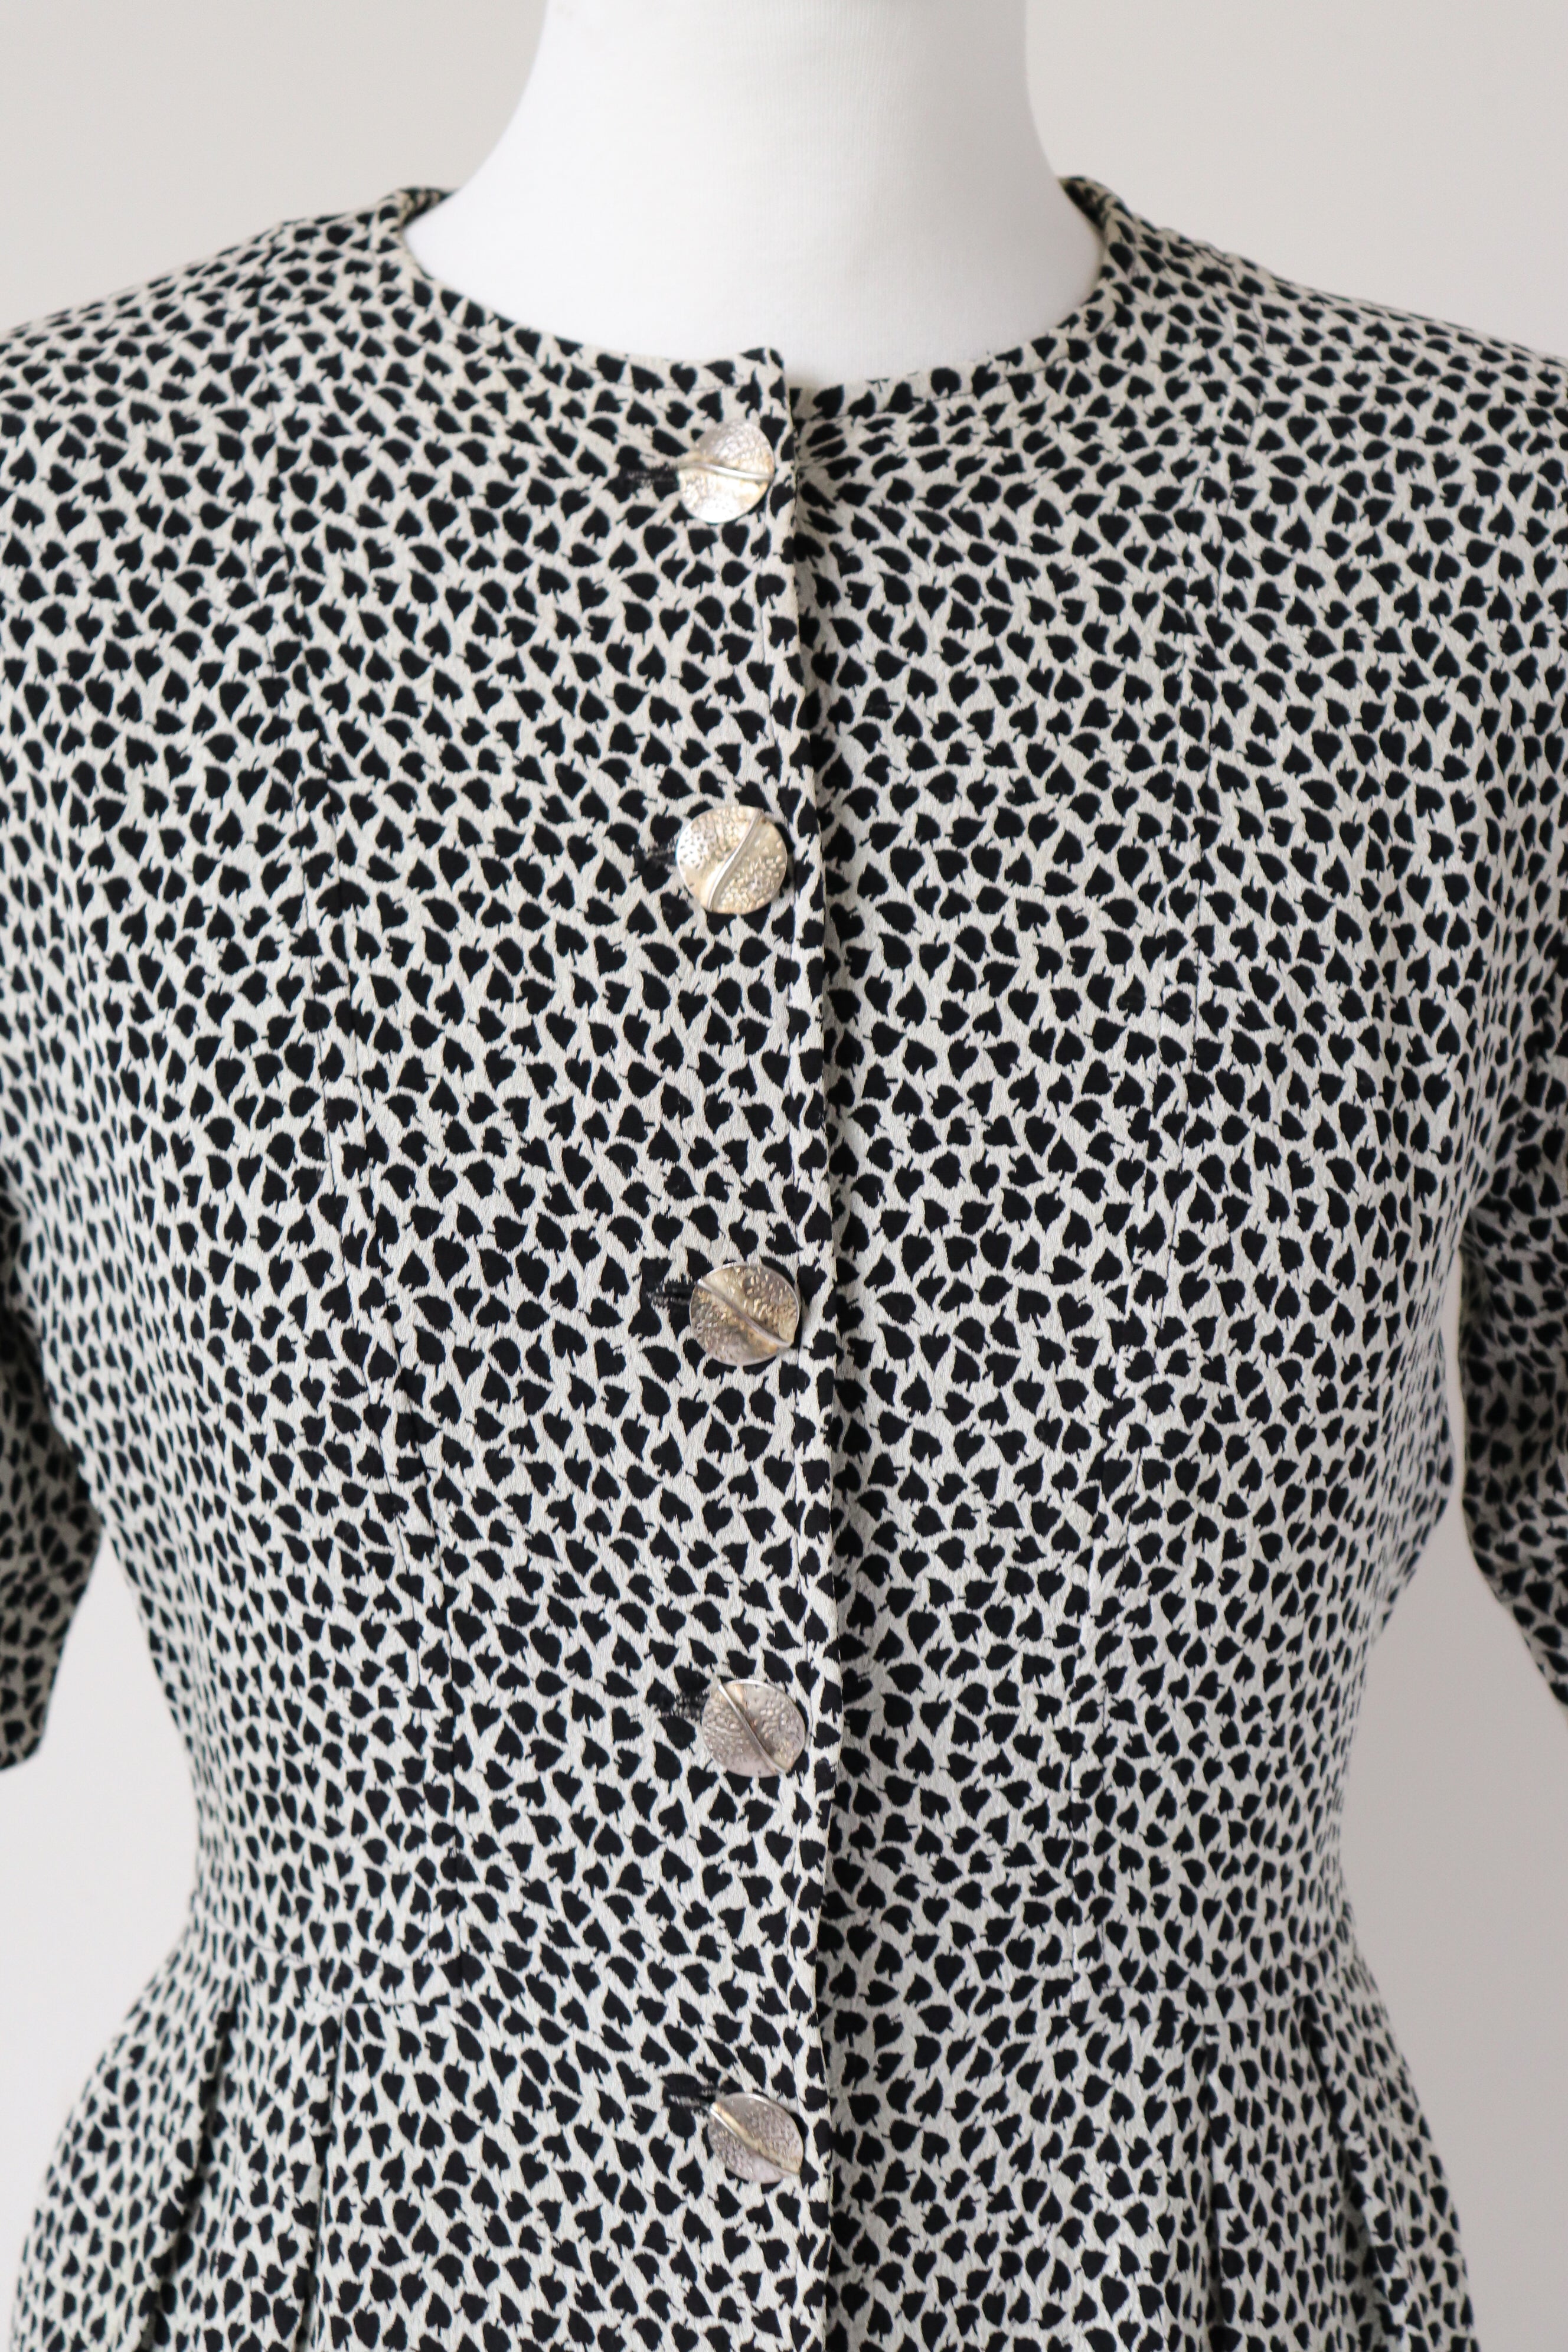 Jean Muir Peplum Top - Short Sleeves - Cream/ Black Spotted - Fit  XS / UK 18